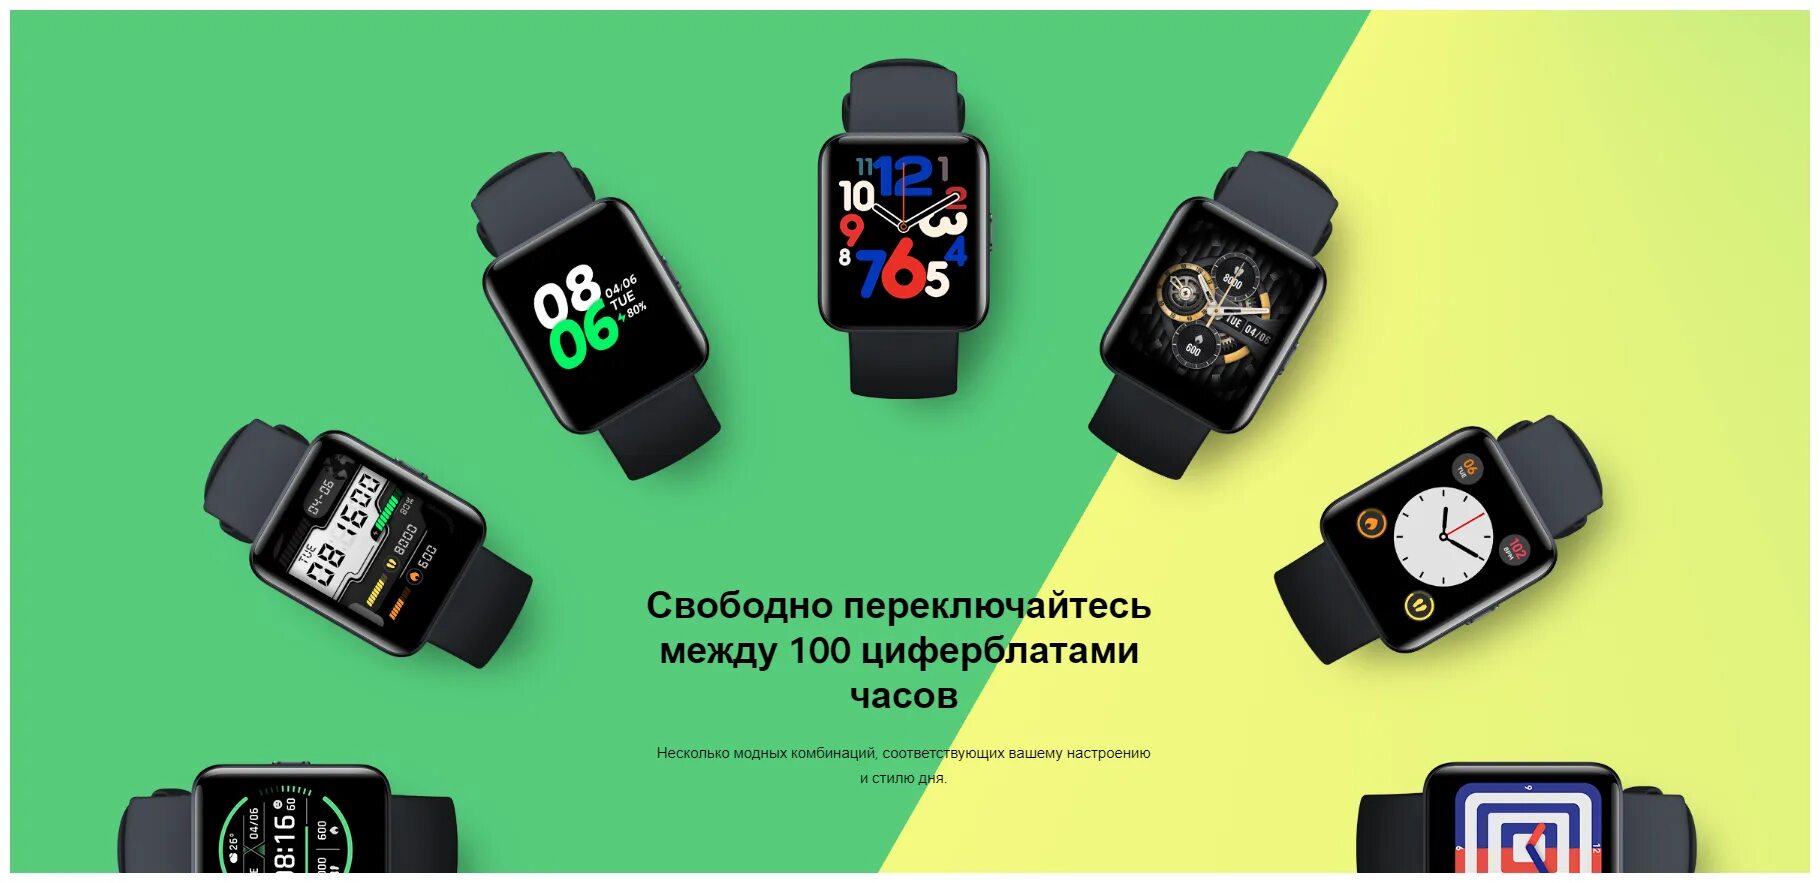 Установить часы redmi watch. Смарт-часы Xiaomi Redmi watch 2 Lite. Смарт часы редми 2 Лайт. Часы редми вотч 2 Лайт. Смарт-часы Xiaomi Redmi watch 2 Lite, черные.